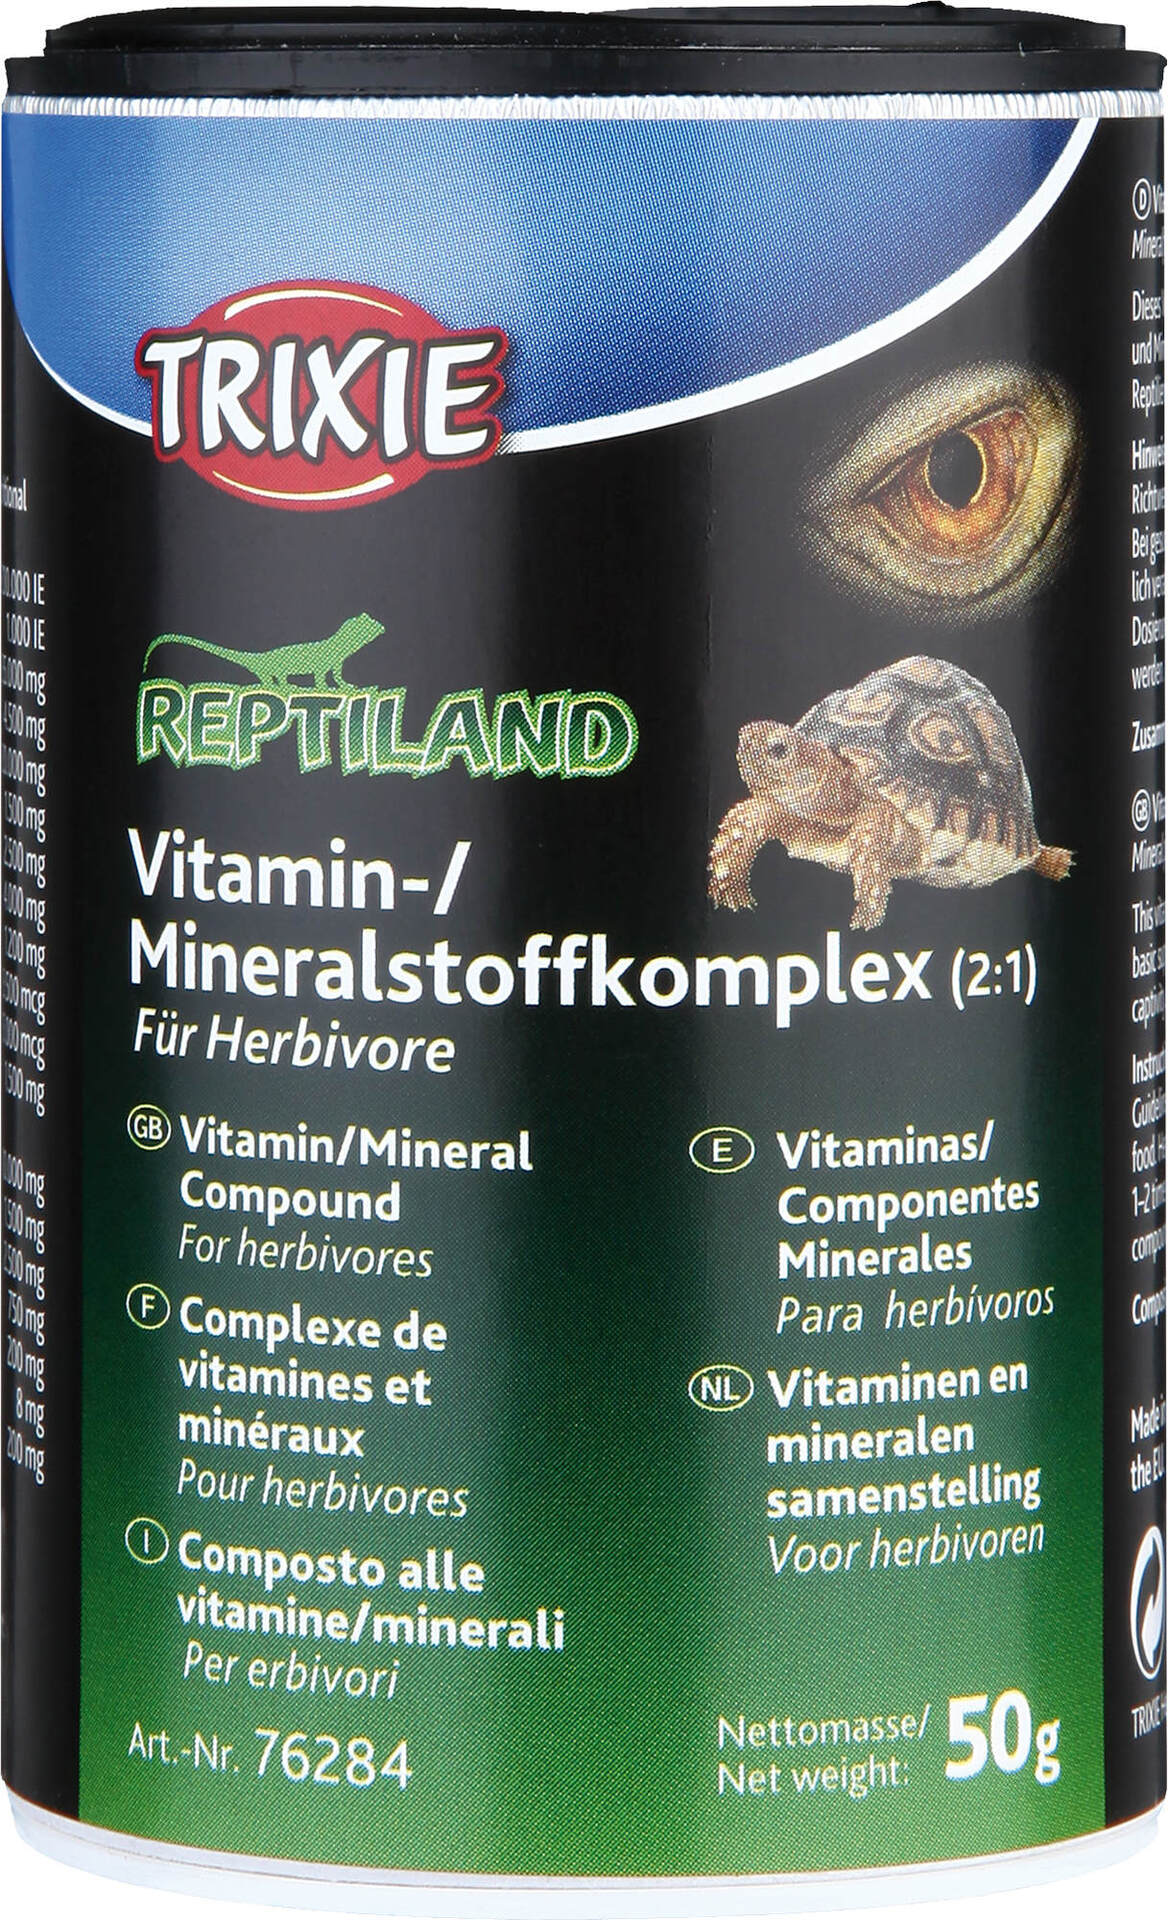 Vitamin-/Mineralstoffkomplex für Herbivore